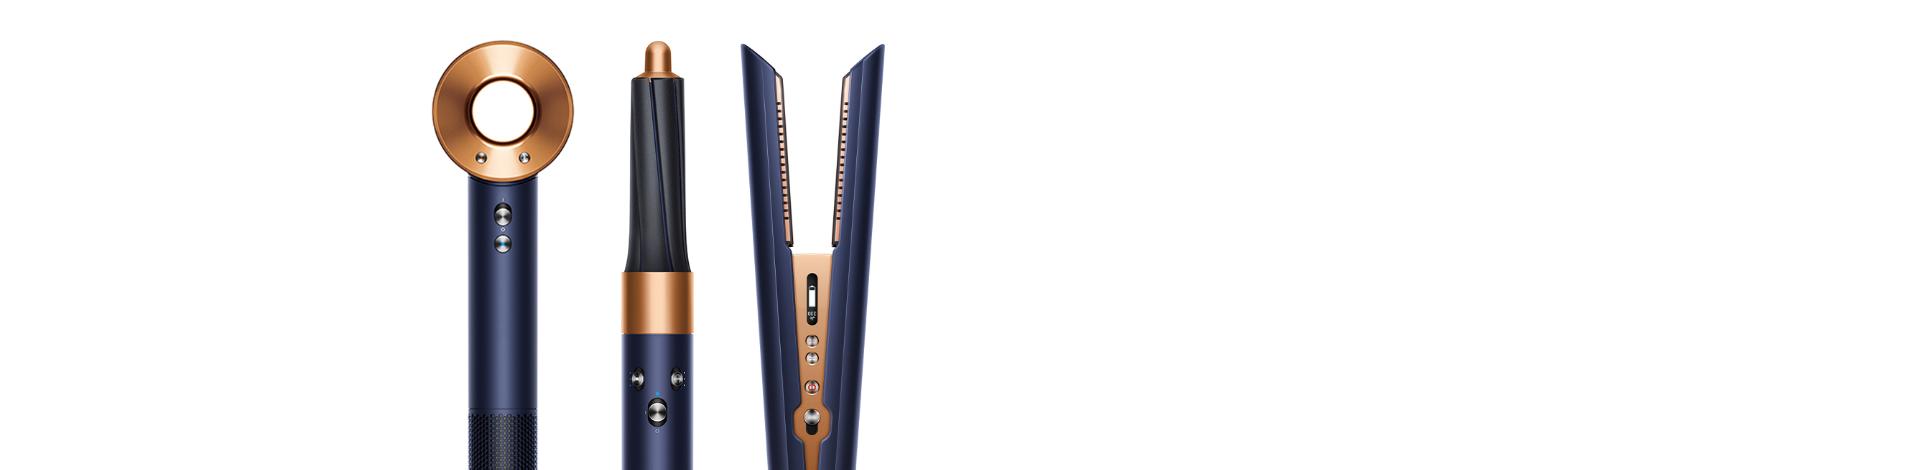 מייבש השיער Dyson Supersonic™ במהדורת מתנה מיוחדת בגווני כחול ונחושת יוקרתיים